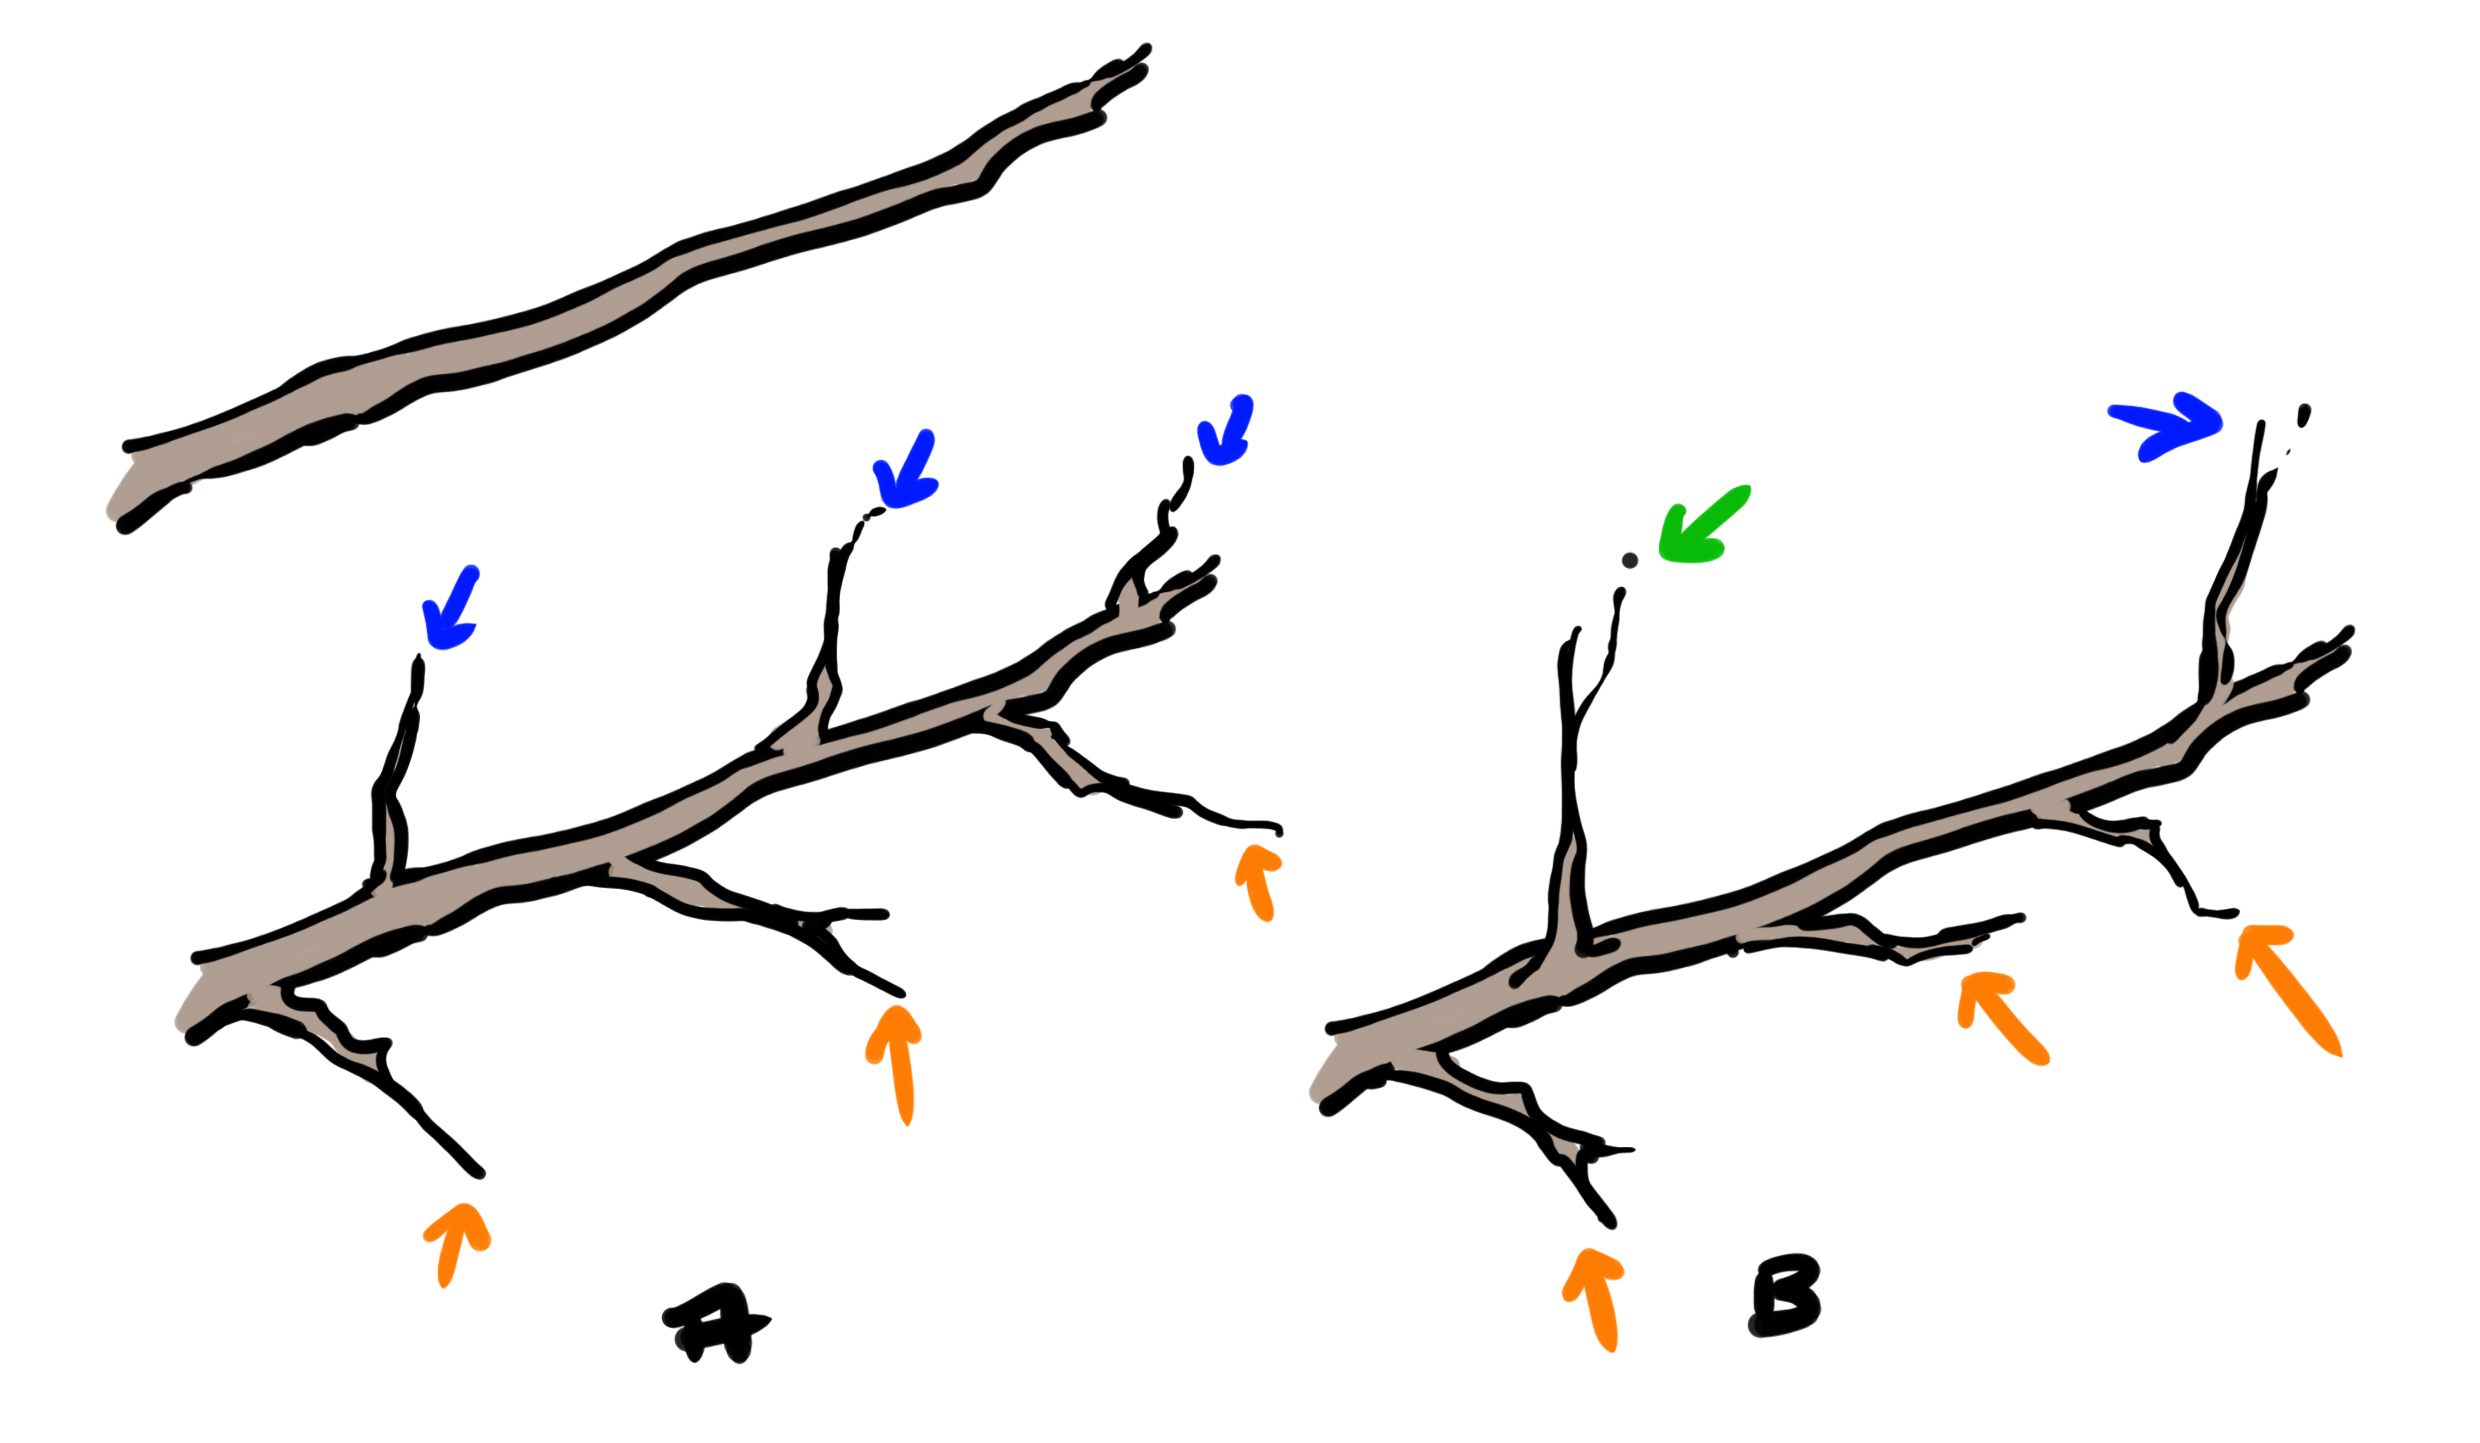 dessiner la structure des ramifications des branches 2